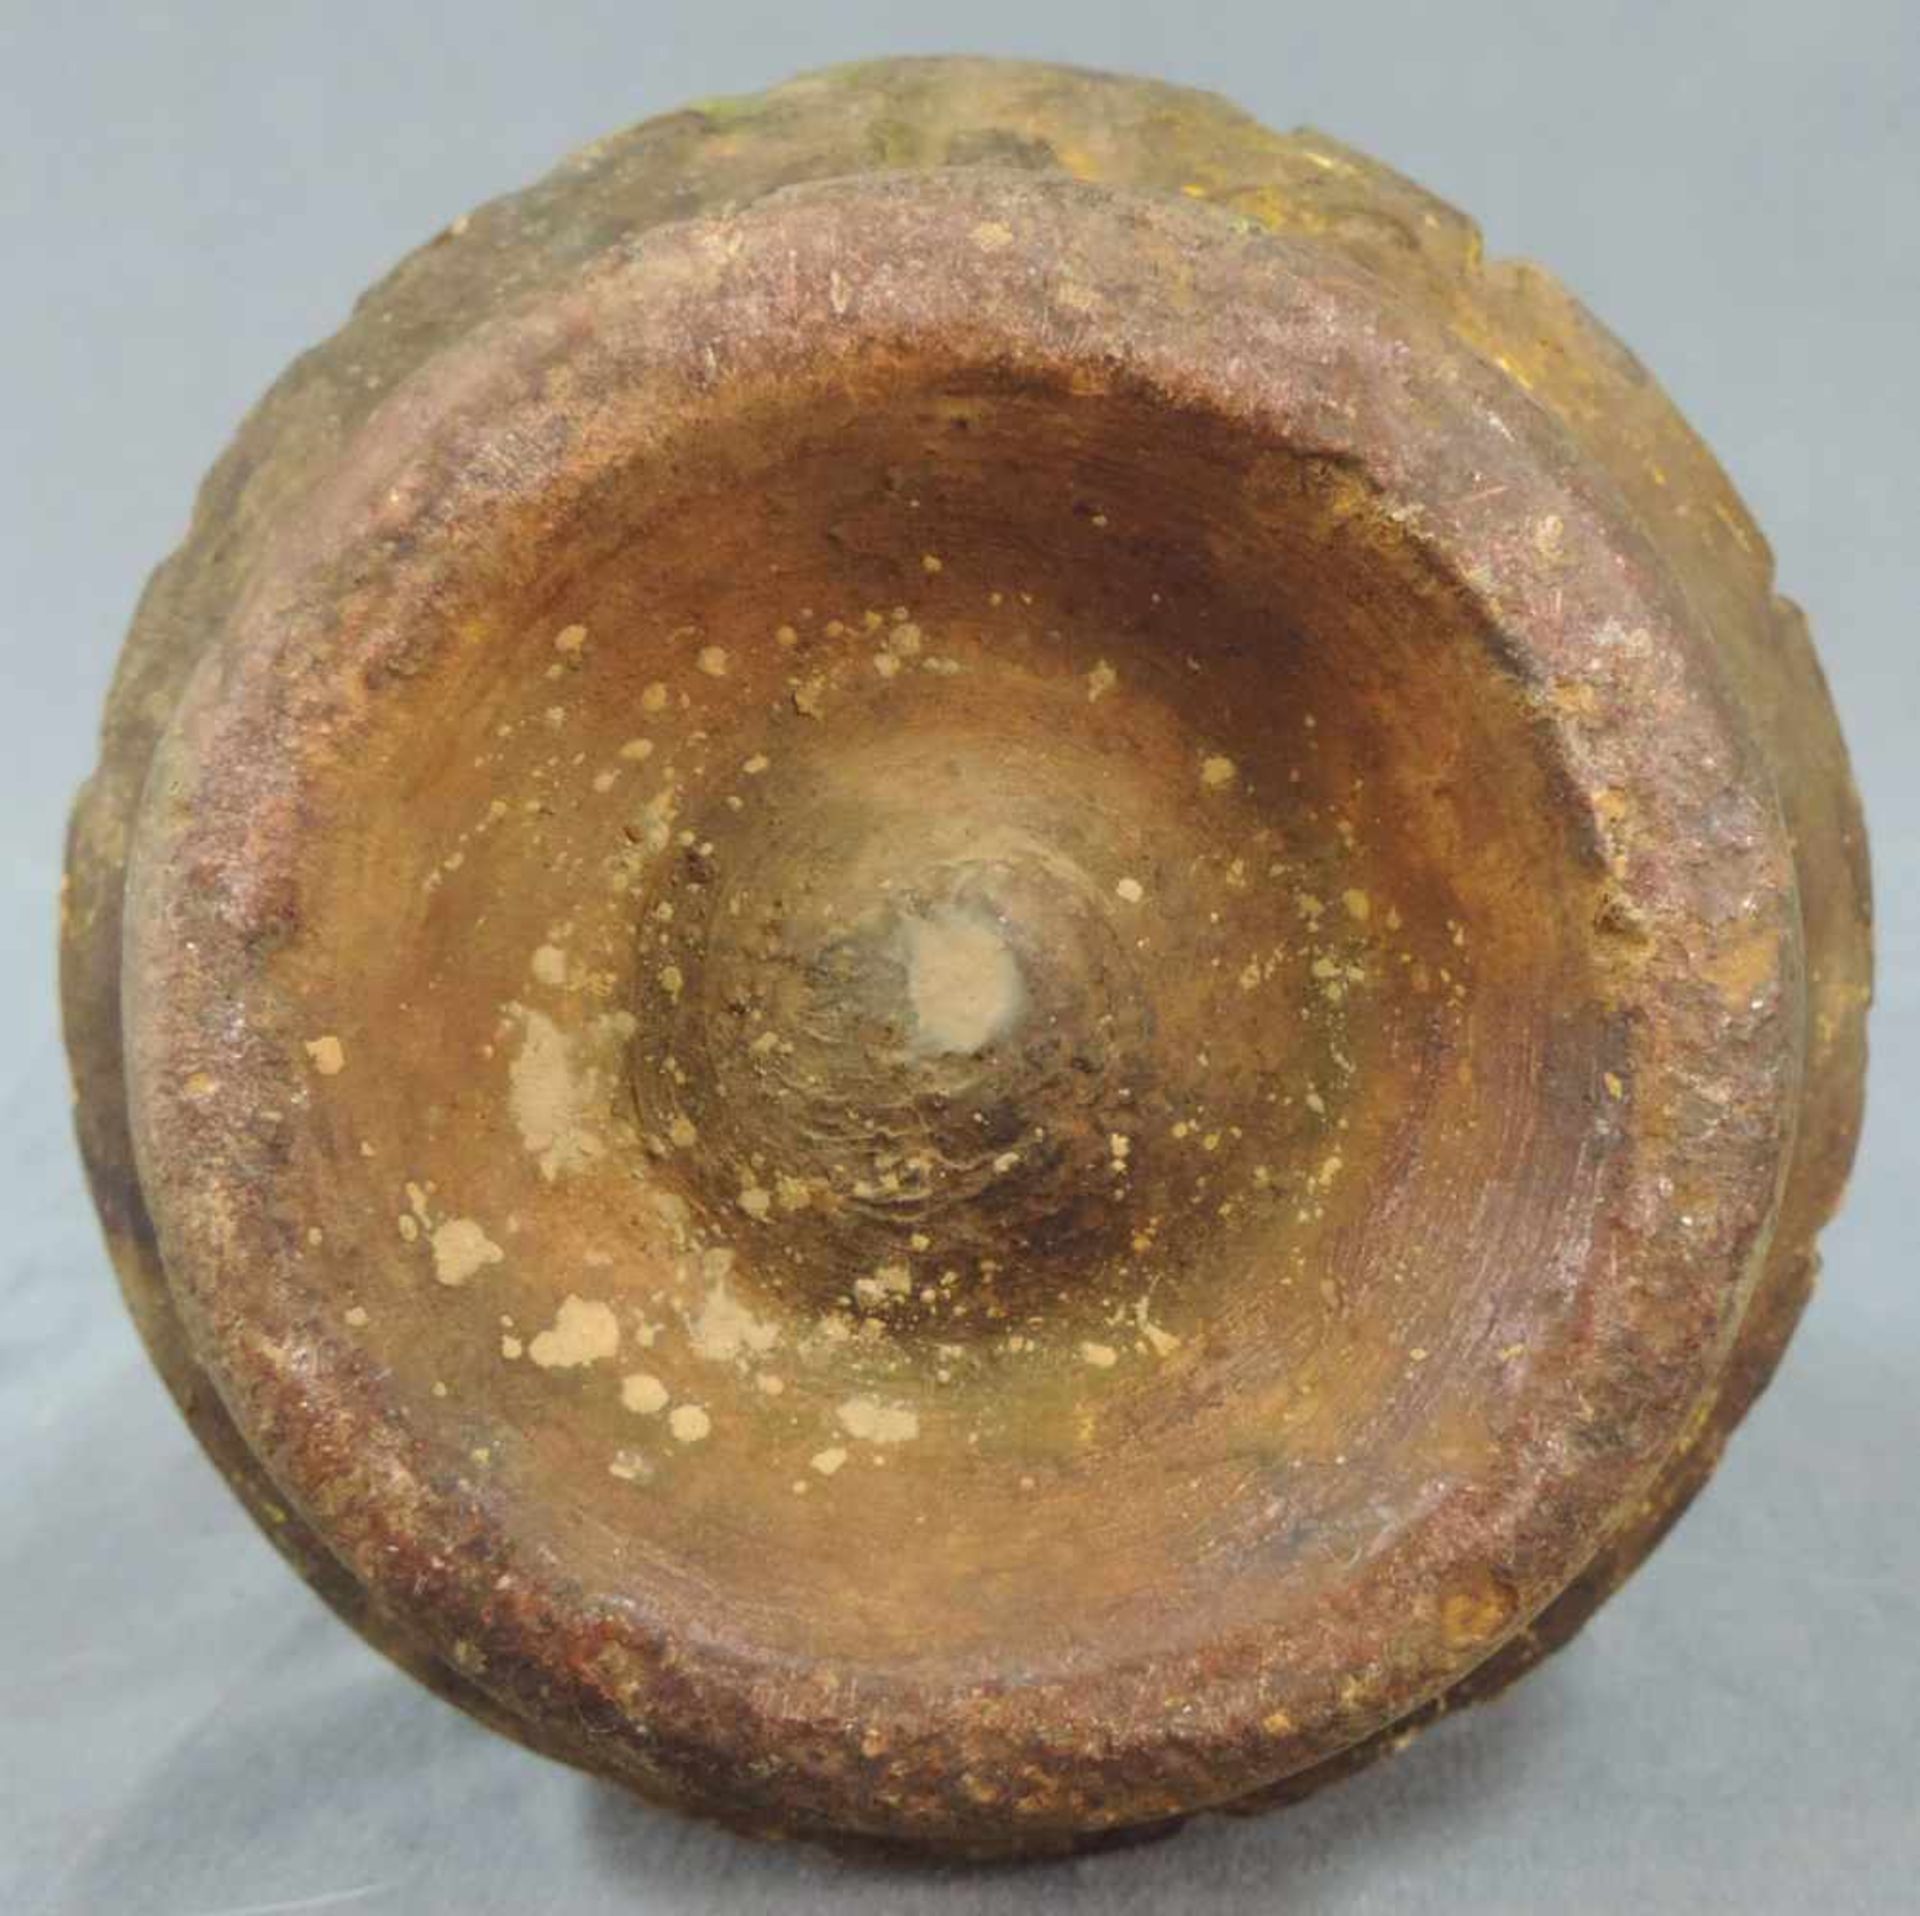 Vase mit Rillendekor. Steingut. Wohl Zentralasien, antik.32 cm hoch.Vase with groove decor. - Image 5 of 6